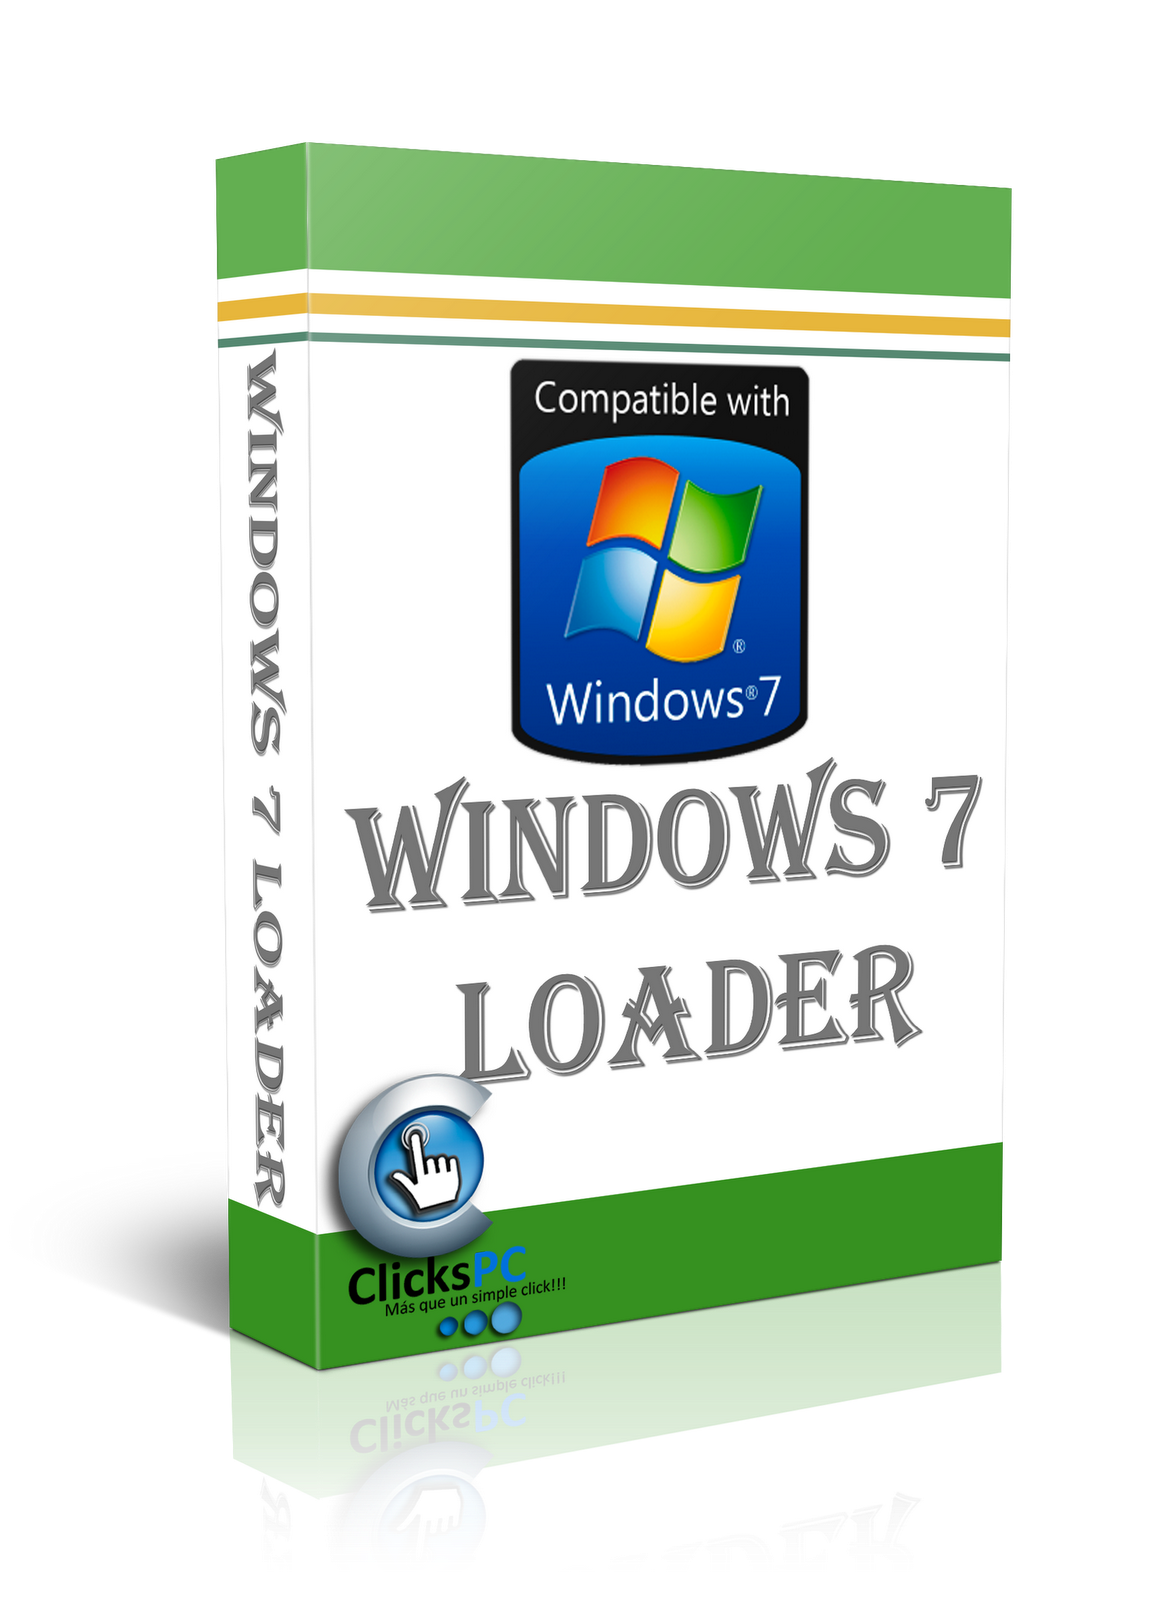 Windows loader v2 0.5 by daz updated